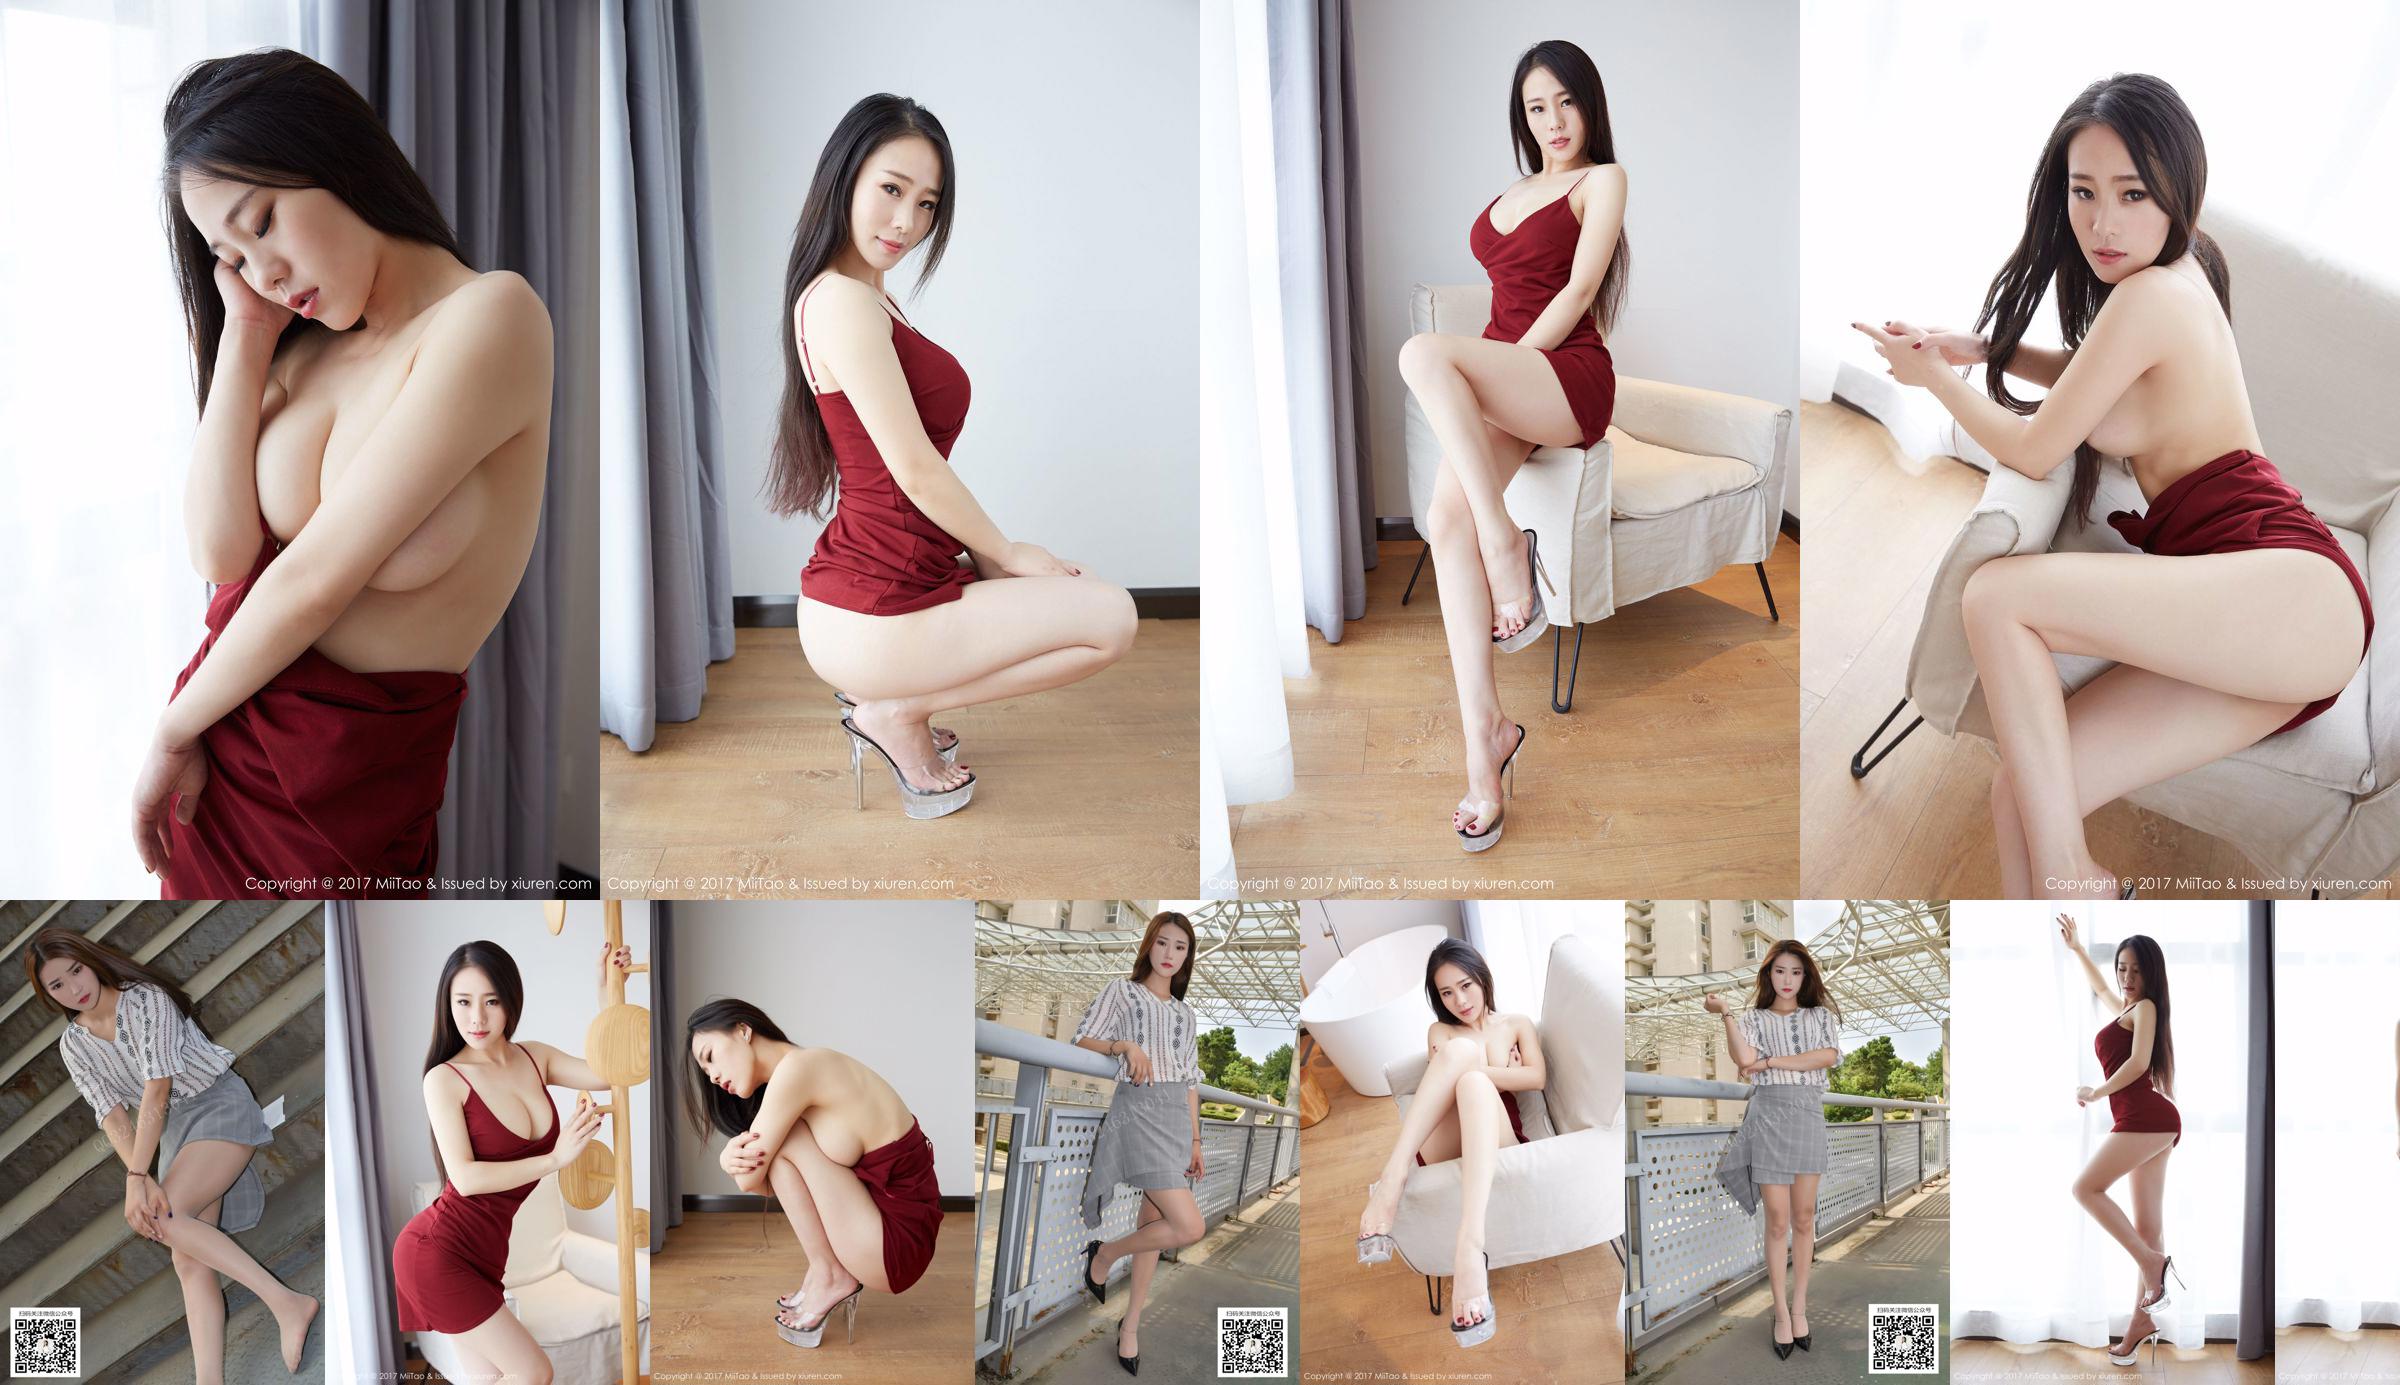 [Съемка модели Dasheng] No.075 Yuwei Uniform Miss Sister No.e1dfe8 Страница 1